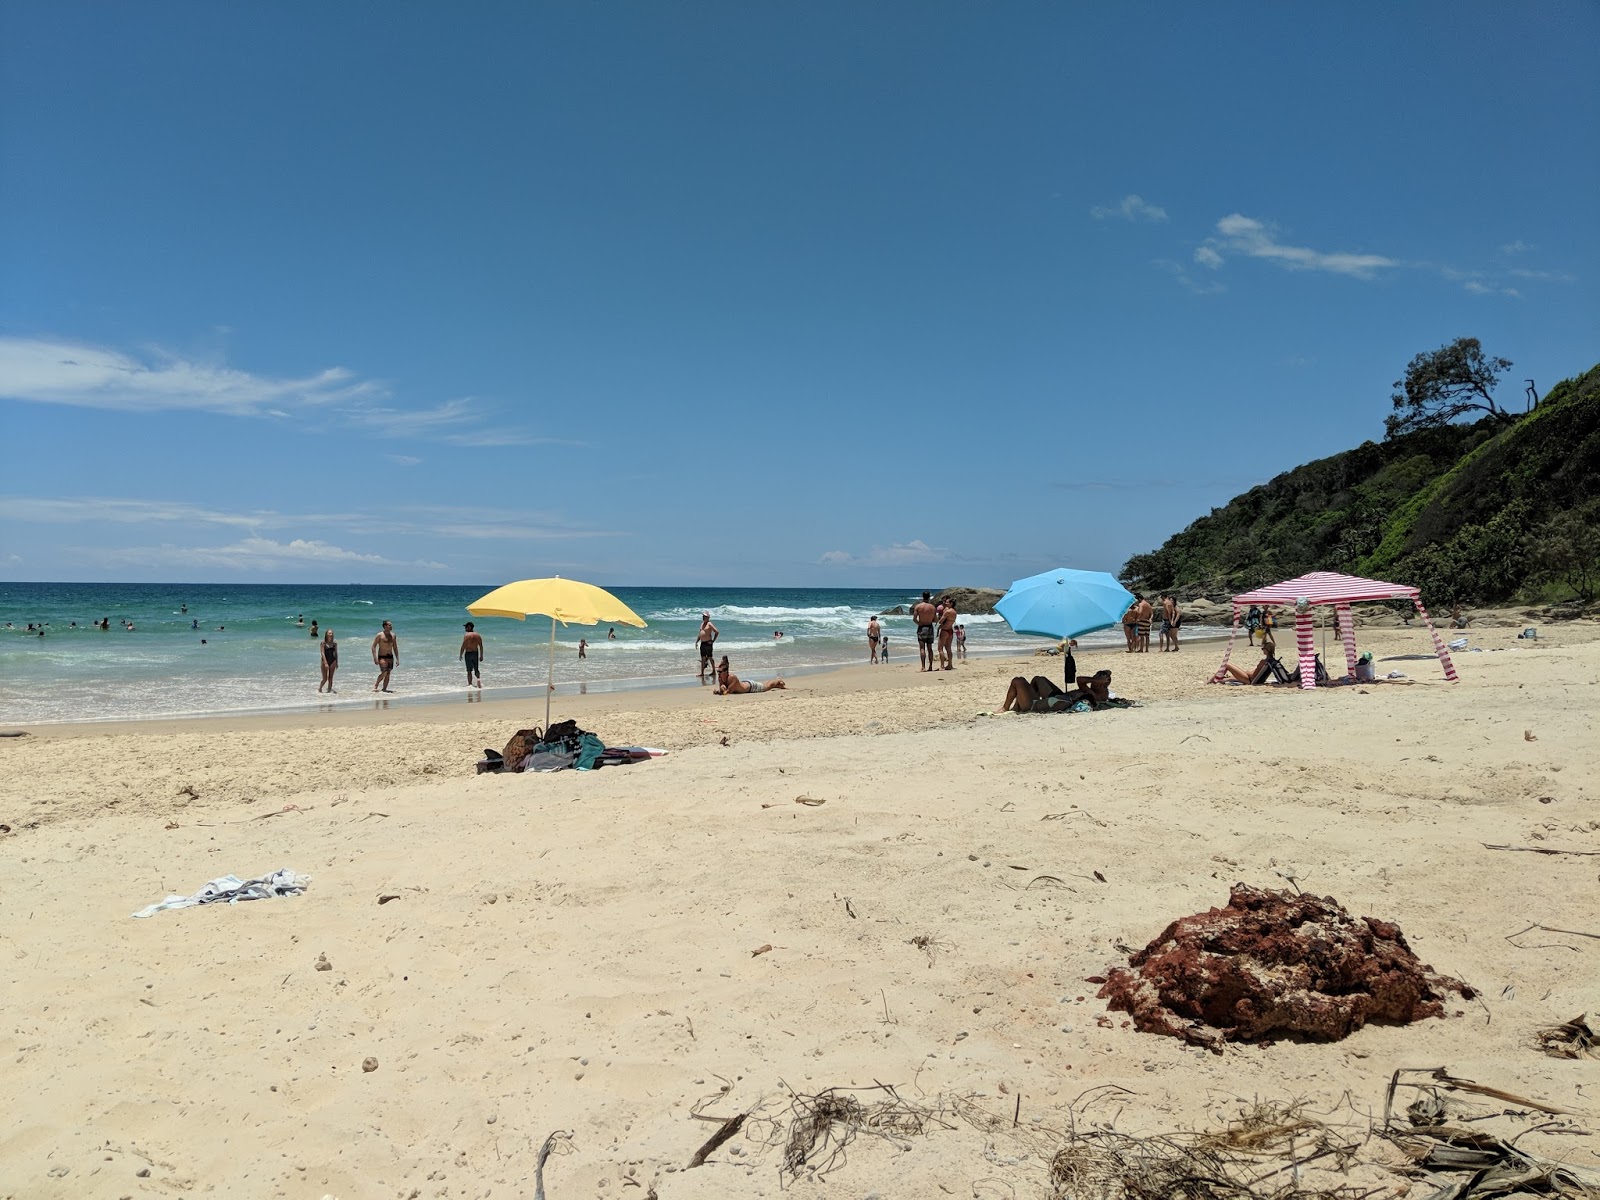 First Bay Coolum Beach'in fotoğrafı geniş plaj ile birlikte